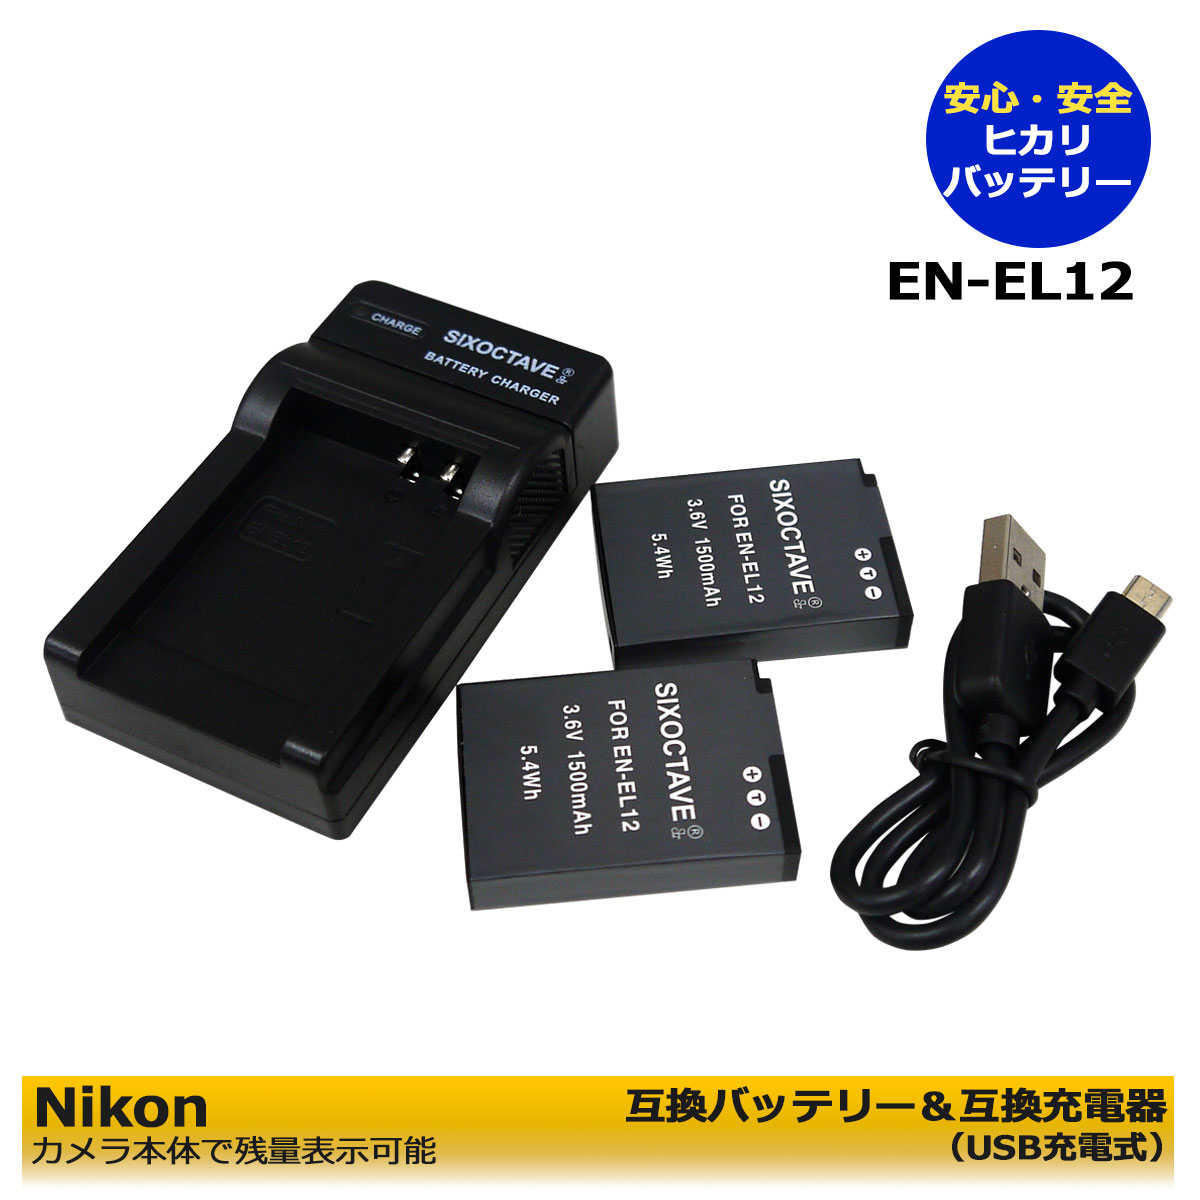 Nikon ニコン EN-EL12 Micro USB付き 互換品